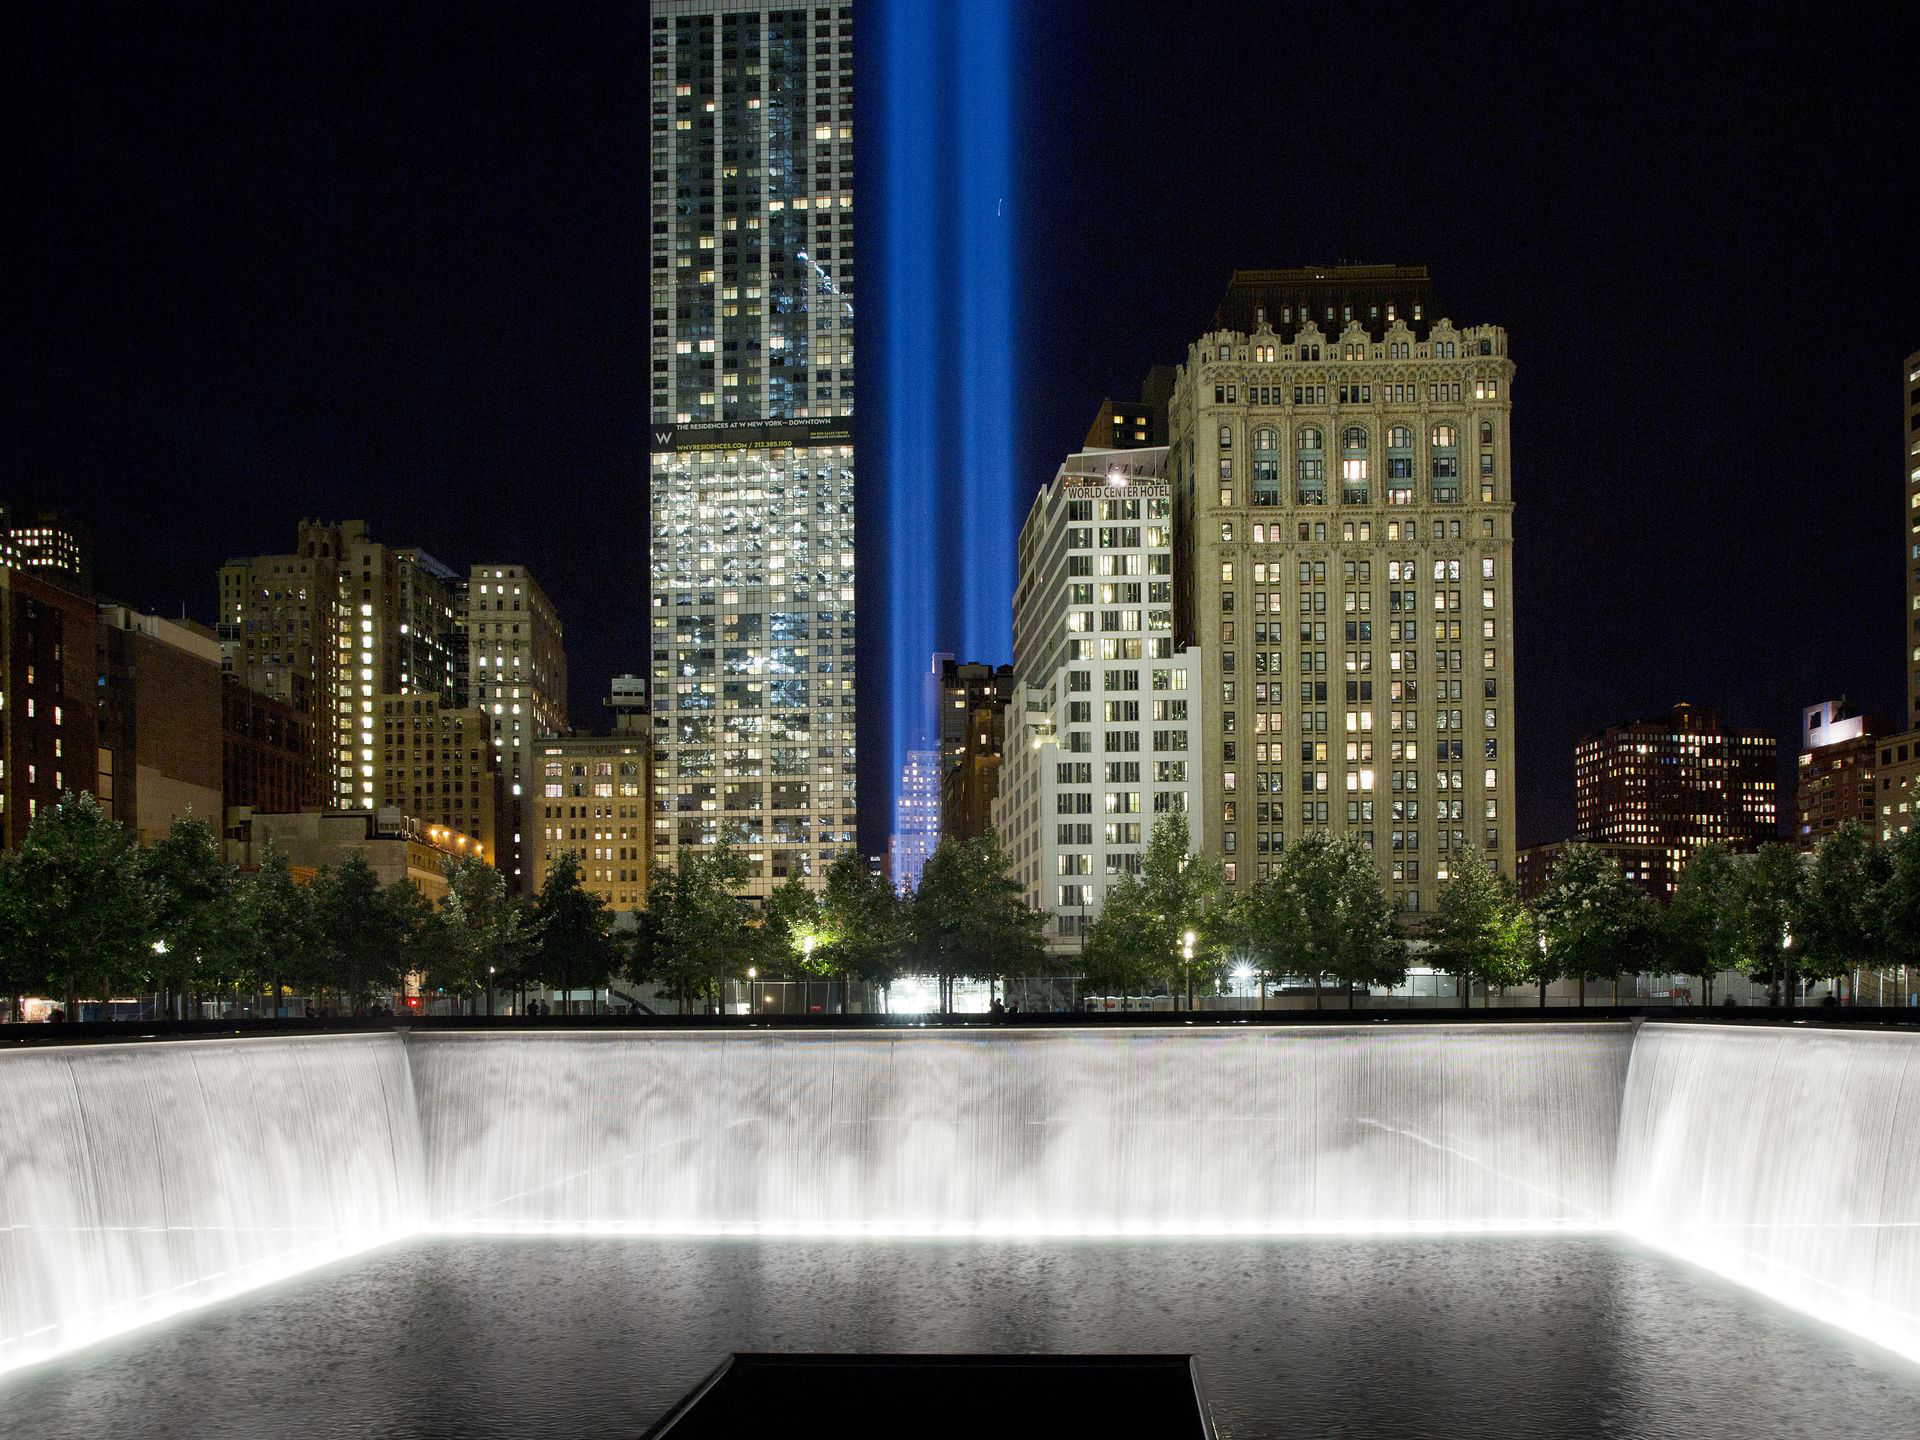 9月8日，两道光束在世贸大楼旧址直射天空。它们是由88盏探照灯的矩阵组成，以纪念在袭击中逝去的人们 。